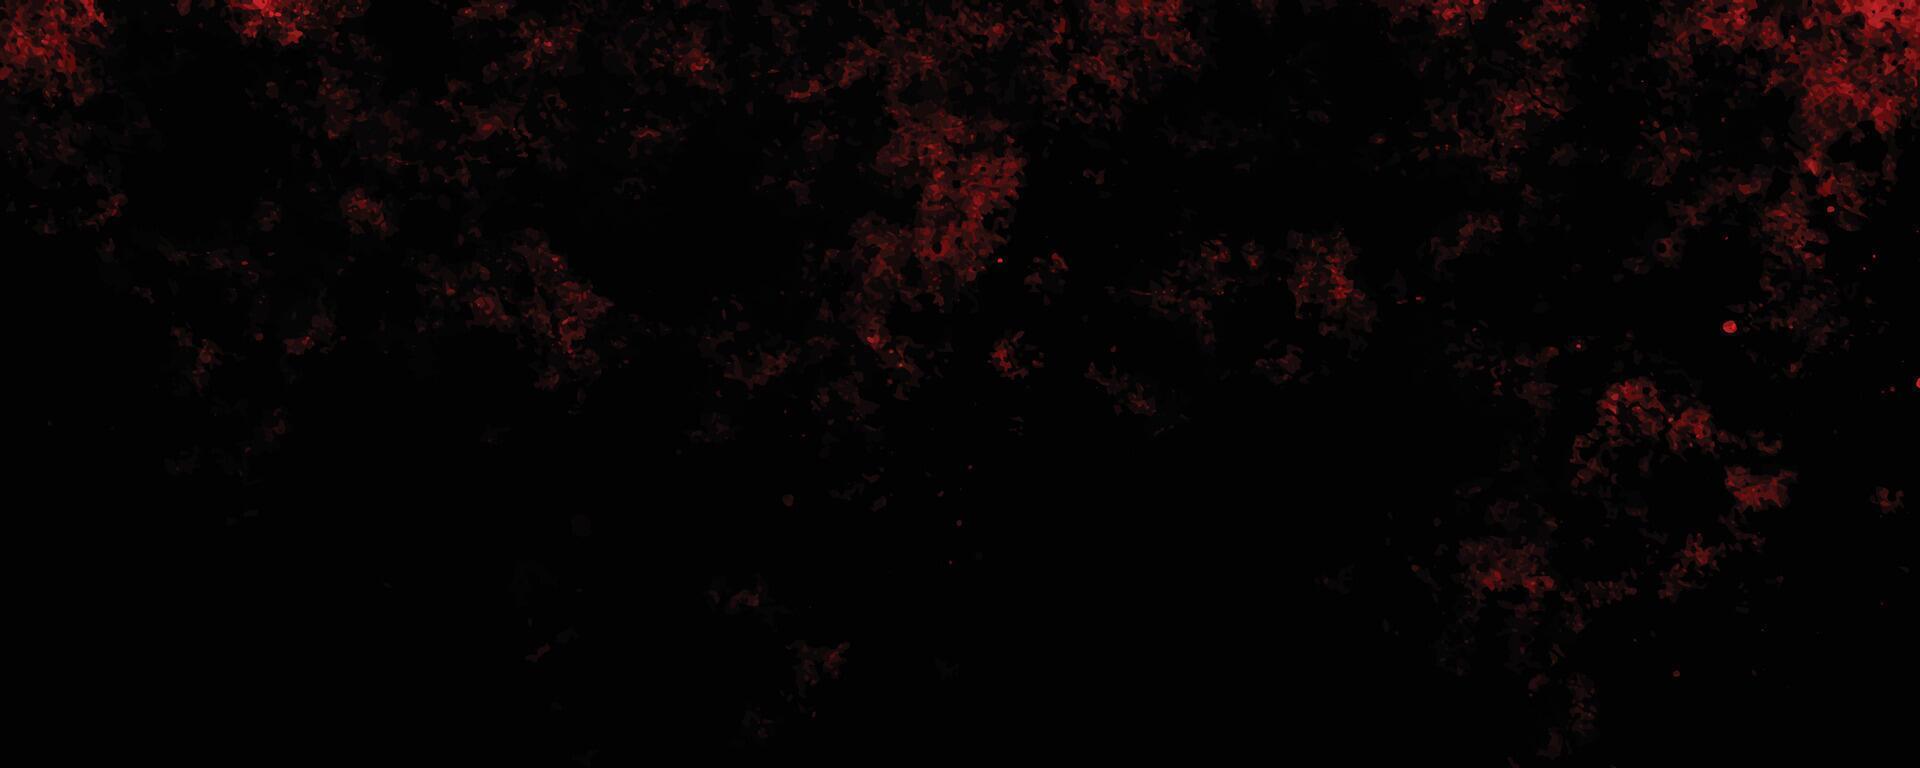 afligido rojo grunge textura en un oscuro fondo, vector